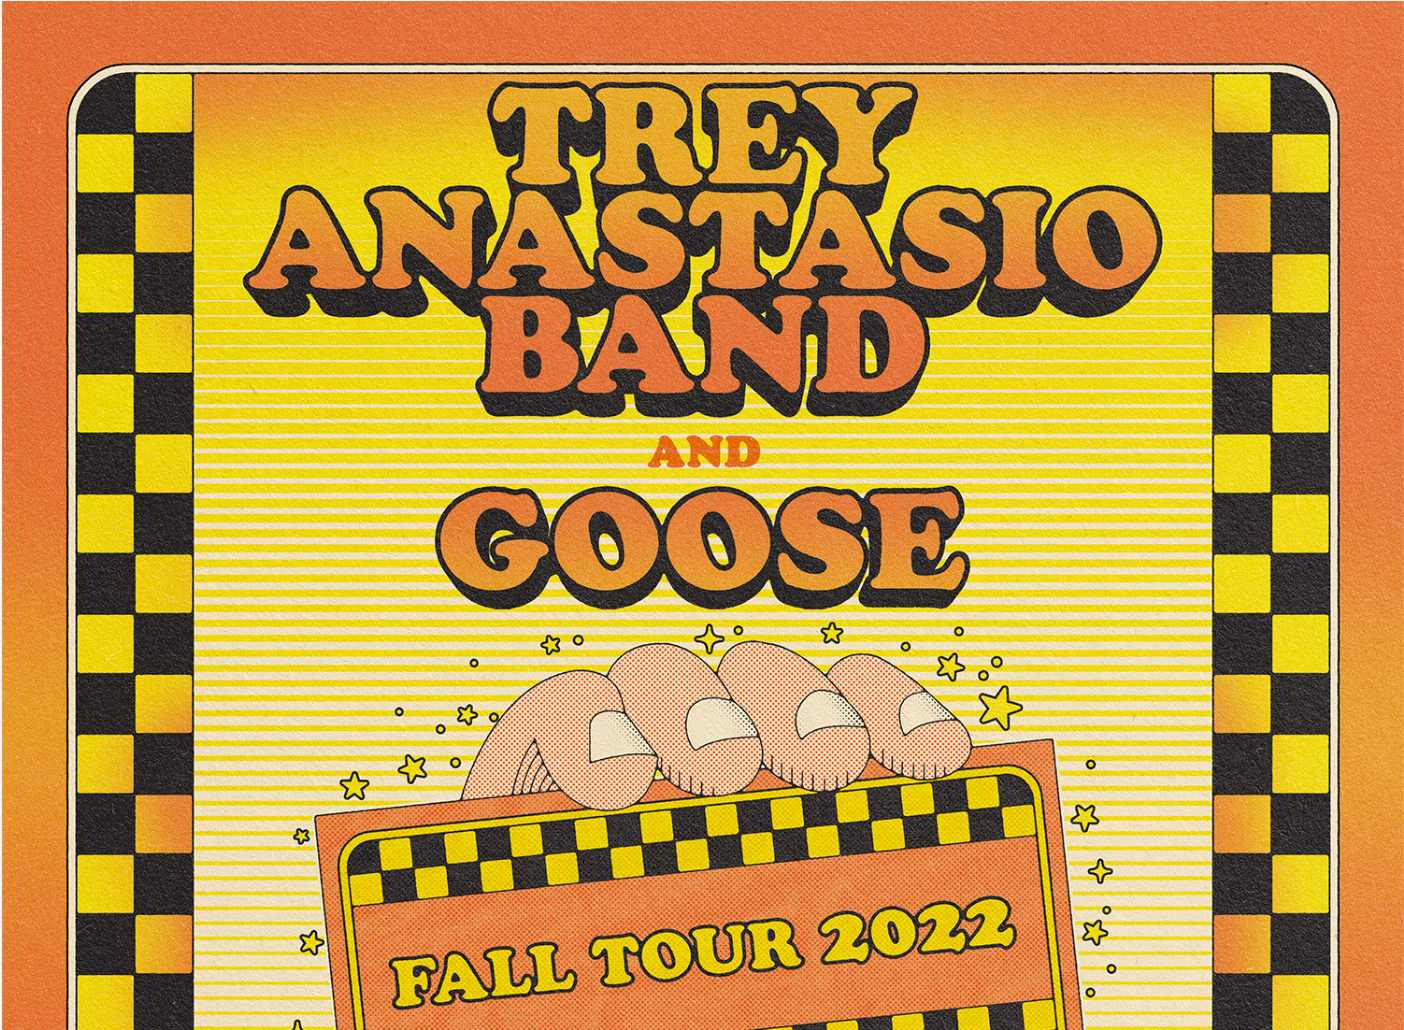 Trey Anastasio Band & Goose Fall Tour